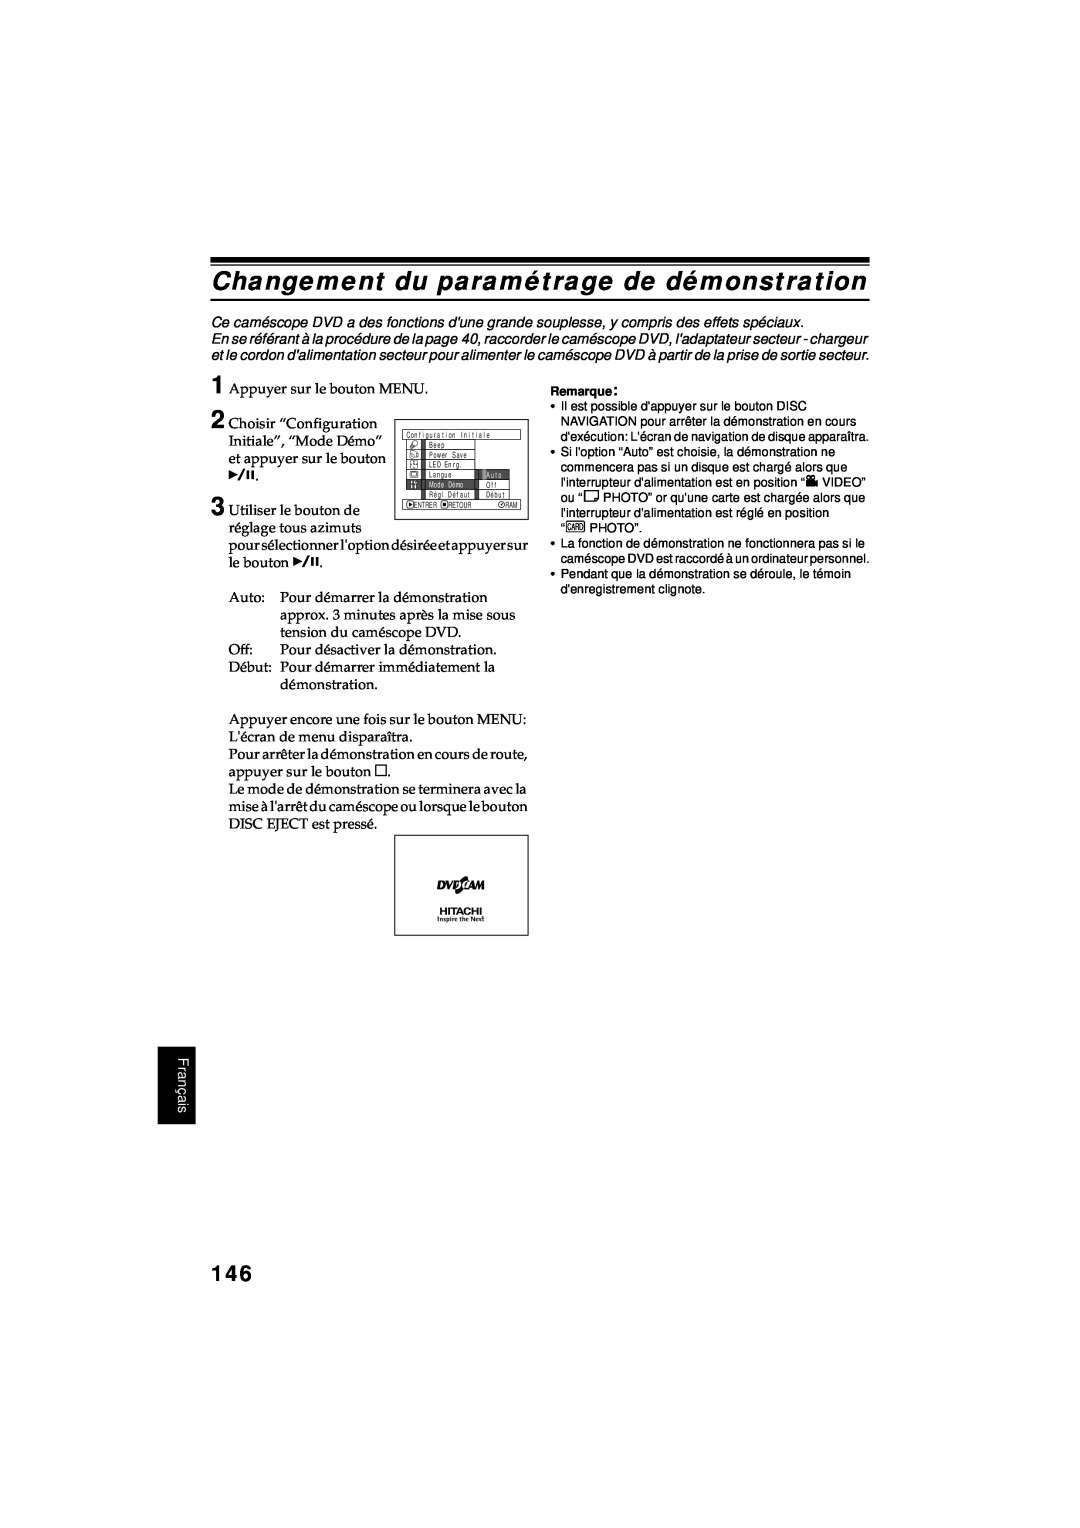 Hitachi DZ-MV380A manual Changement du paramétrage de démonstration, Français 